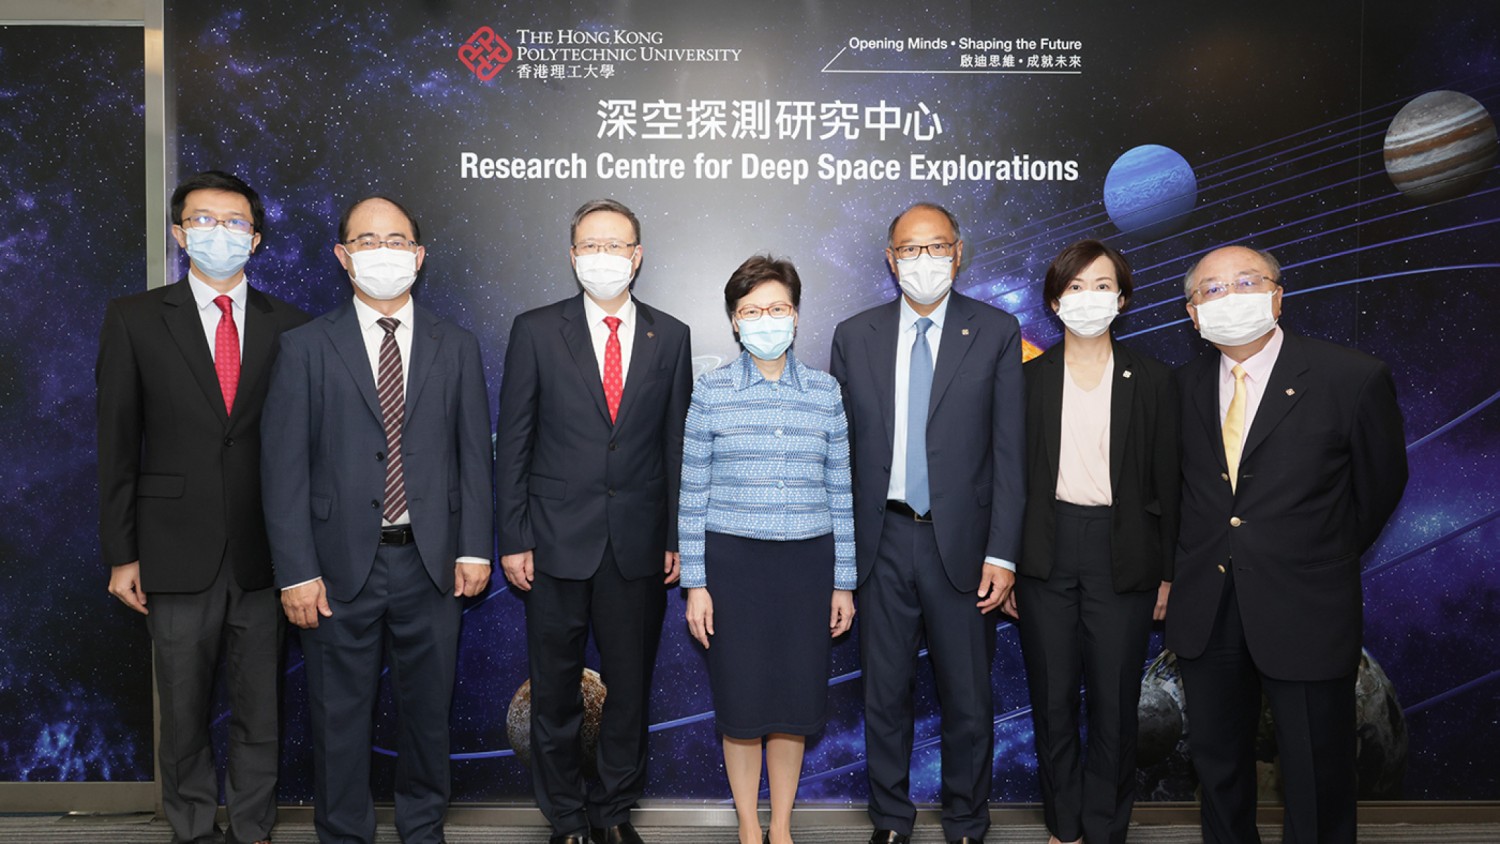 林郑月娥女士 参观深空探测研究中心的精密机器人实验室